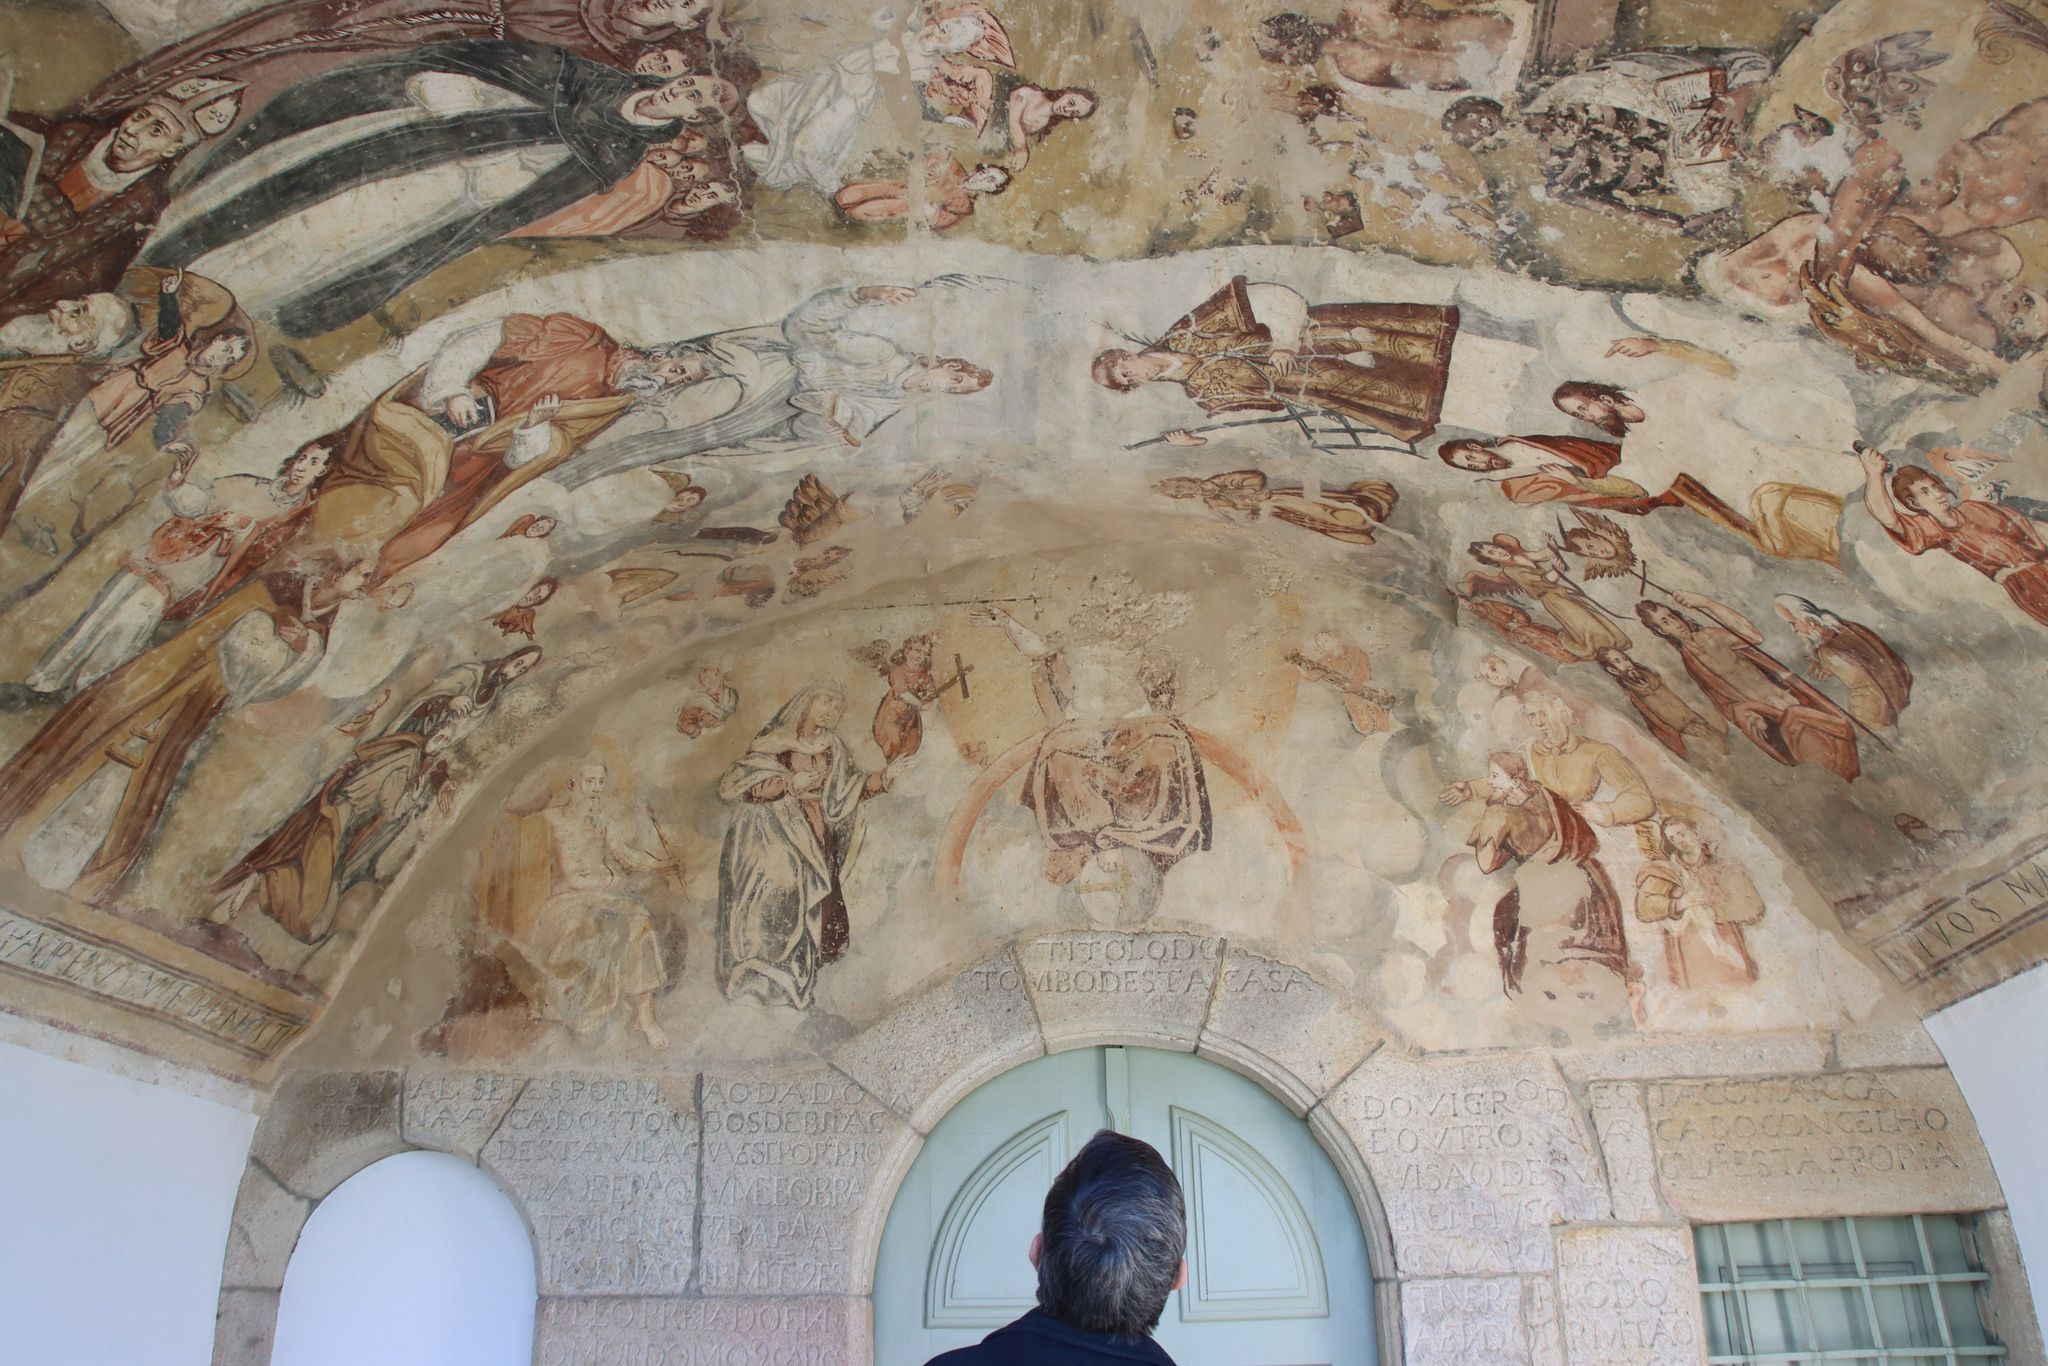 Moncorvo tem ermida do século XVI com 40 painéis a fresco ao estilo da Capela Sistina